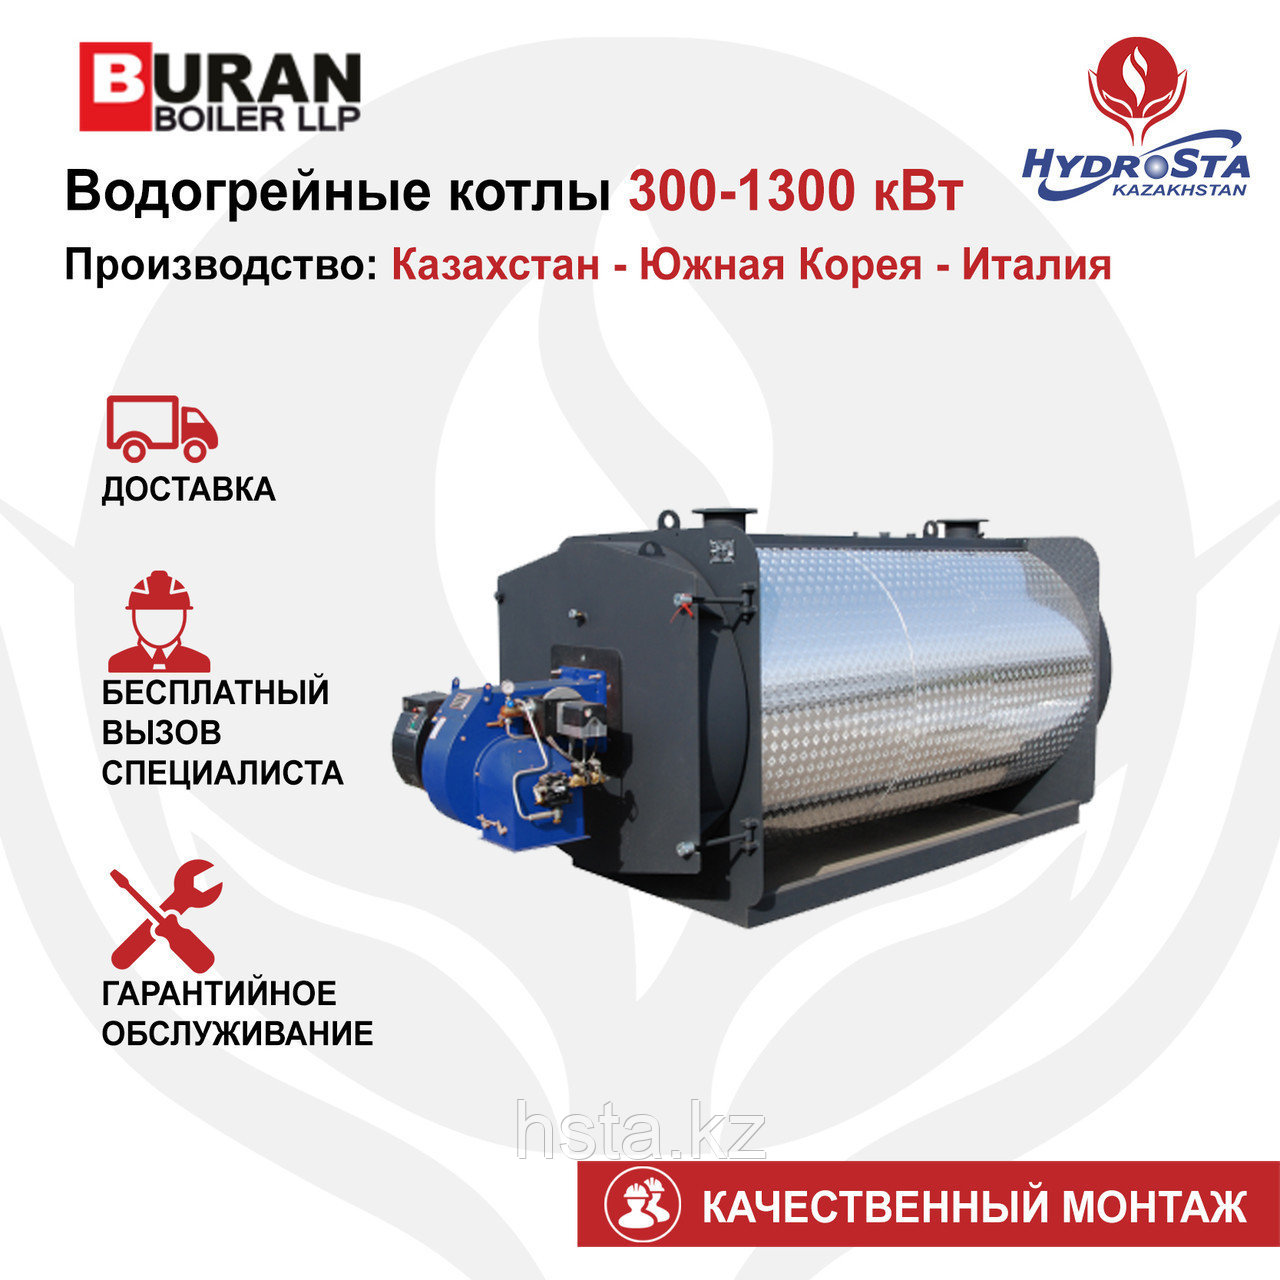 Котел одноконтурный Cronos BB-620 (Buran Boiler) 620кВт (цена без горелки)